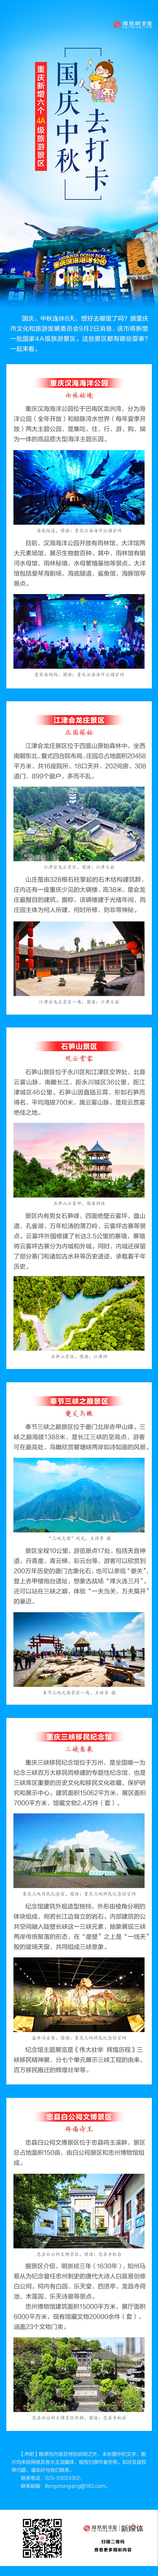 一图读懂 | 重庆新增4A级旅游景区 国庆中秋去打卡